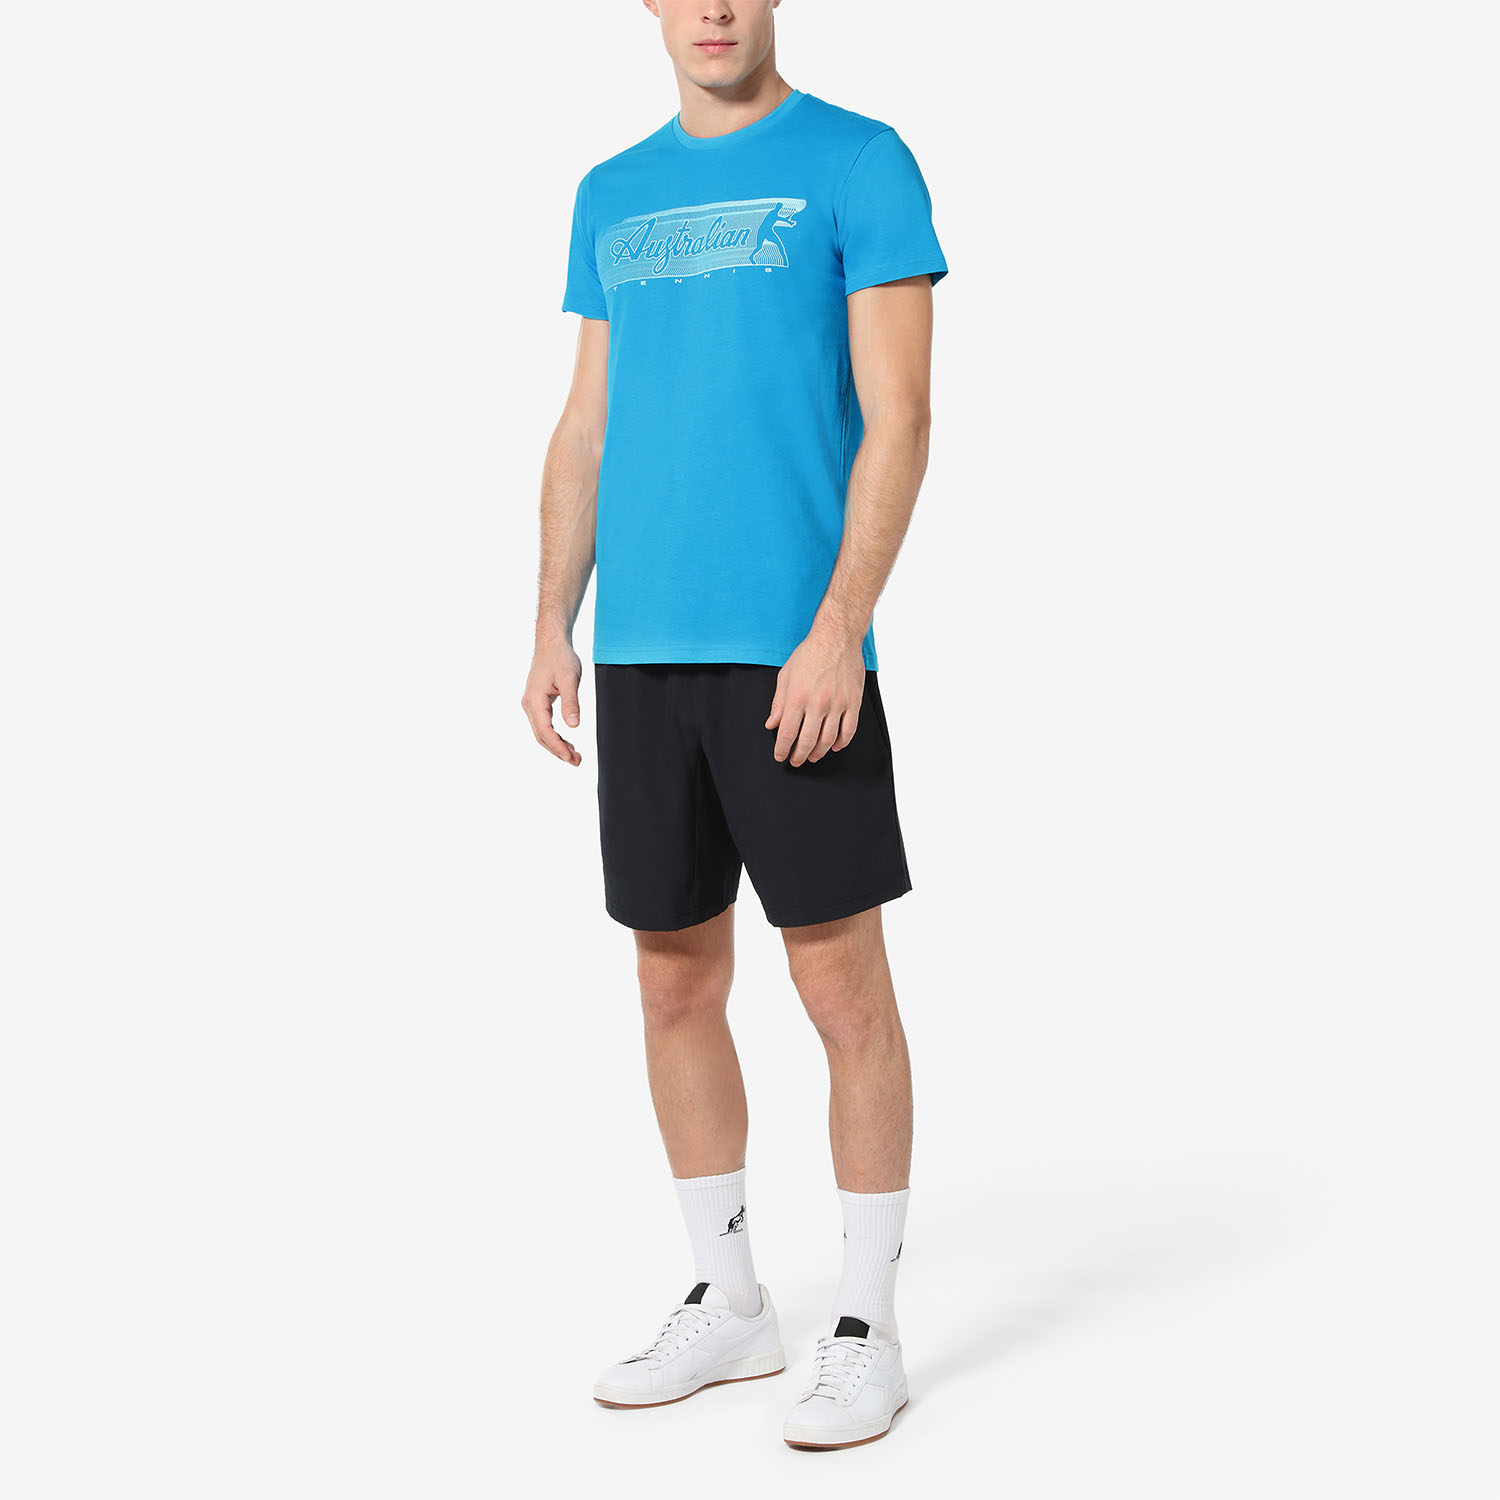 Australian Gradient Camiseta - Blu Capri